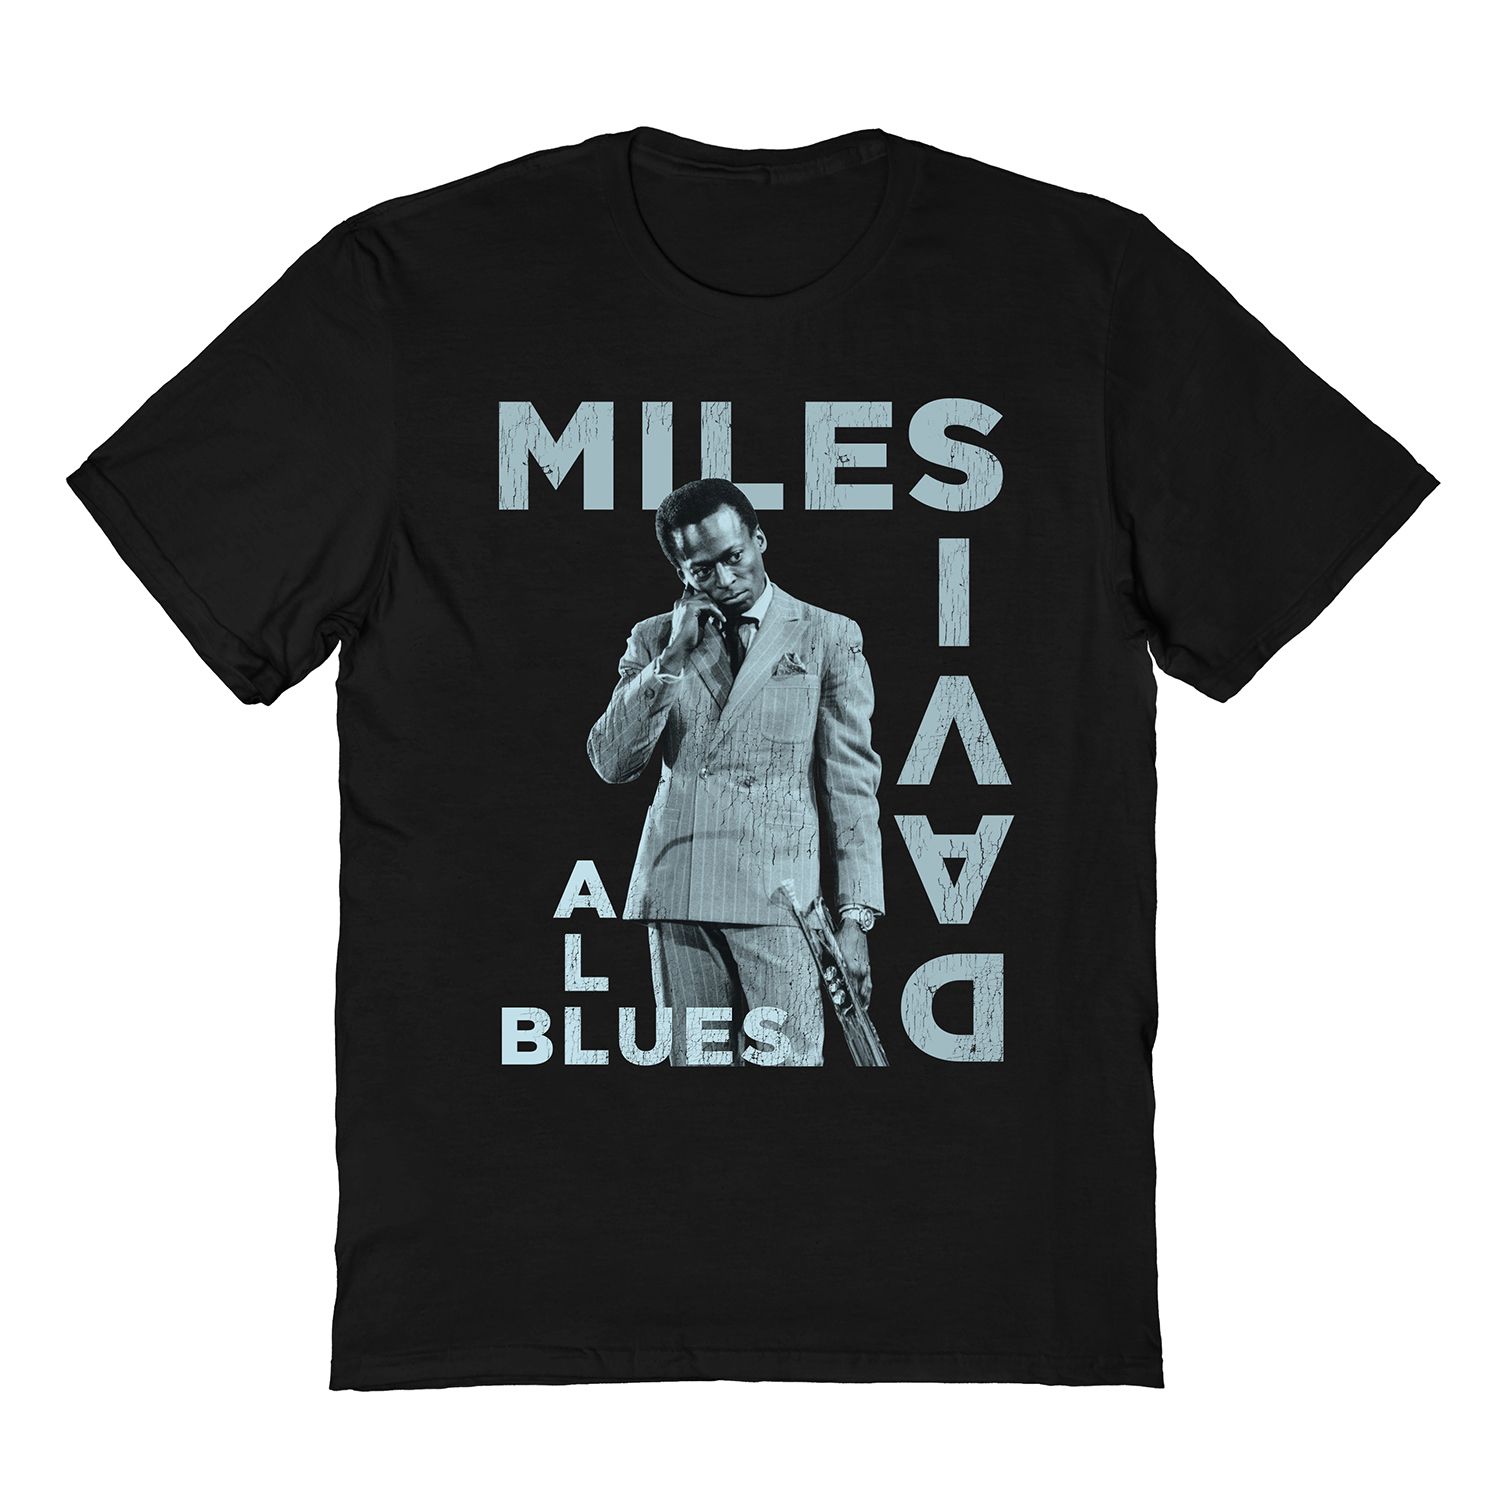 Мужская футболка Miles Davis Licensed Character вид синей футболки miles davis черный